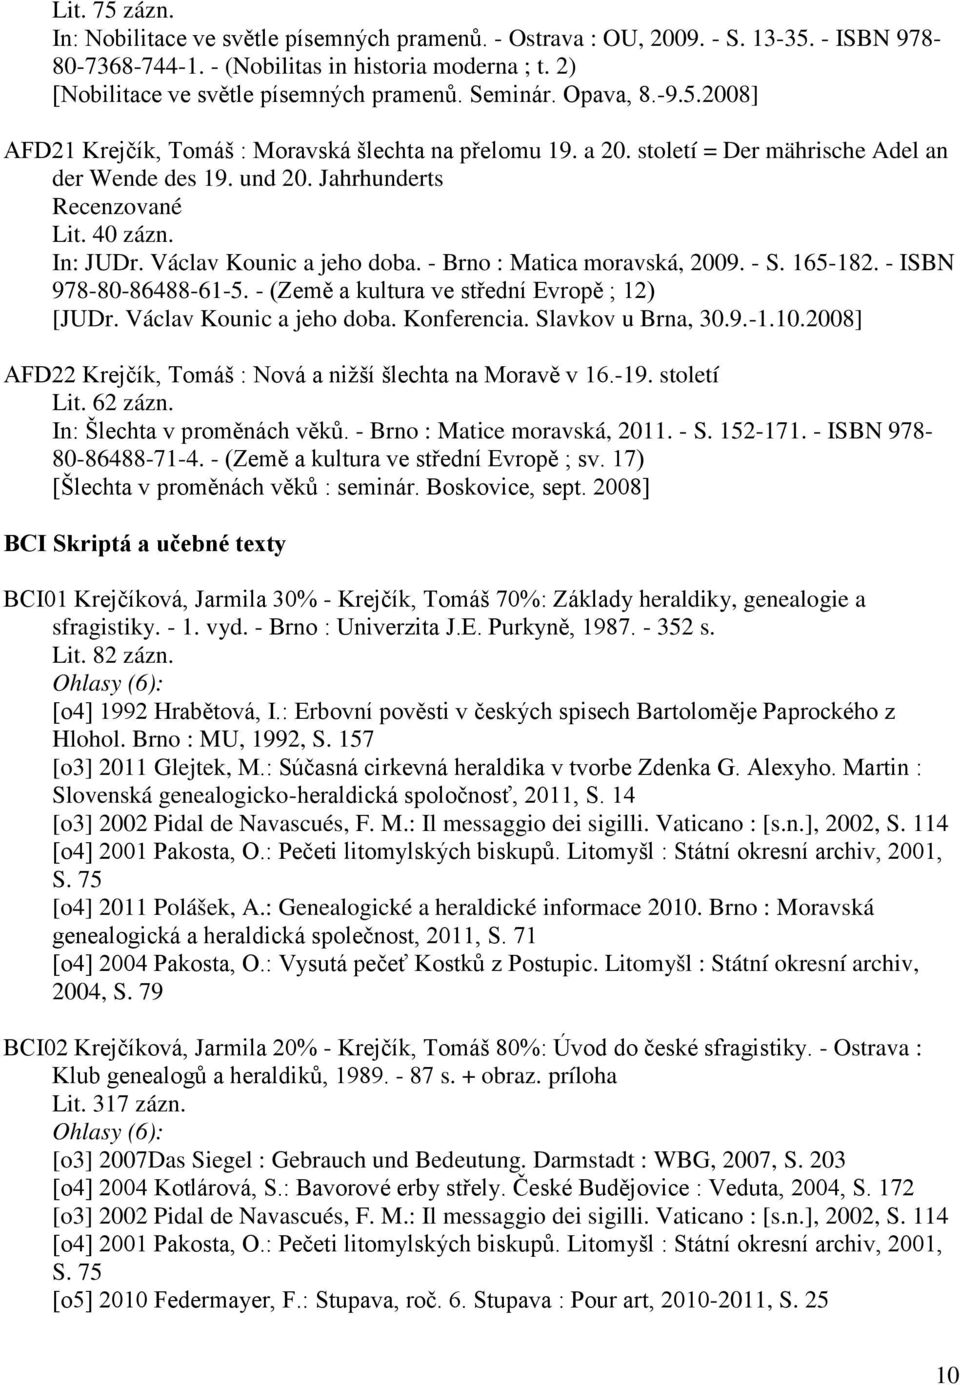 Václav Kounic a jeho doba. - Brno : Matica moravská, 2009. - S. 165-182. - ISBN 978-80-86488-61-5. - (Země a kultura ve střední Evropě ; 12) [JUDr. Václav Kounic a jeho doba. Konferencia.